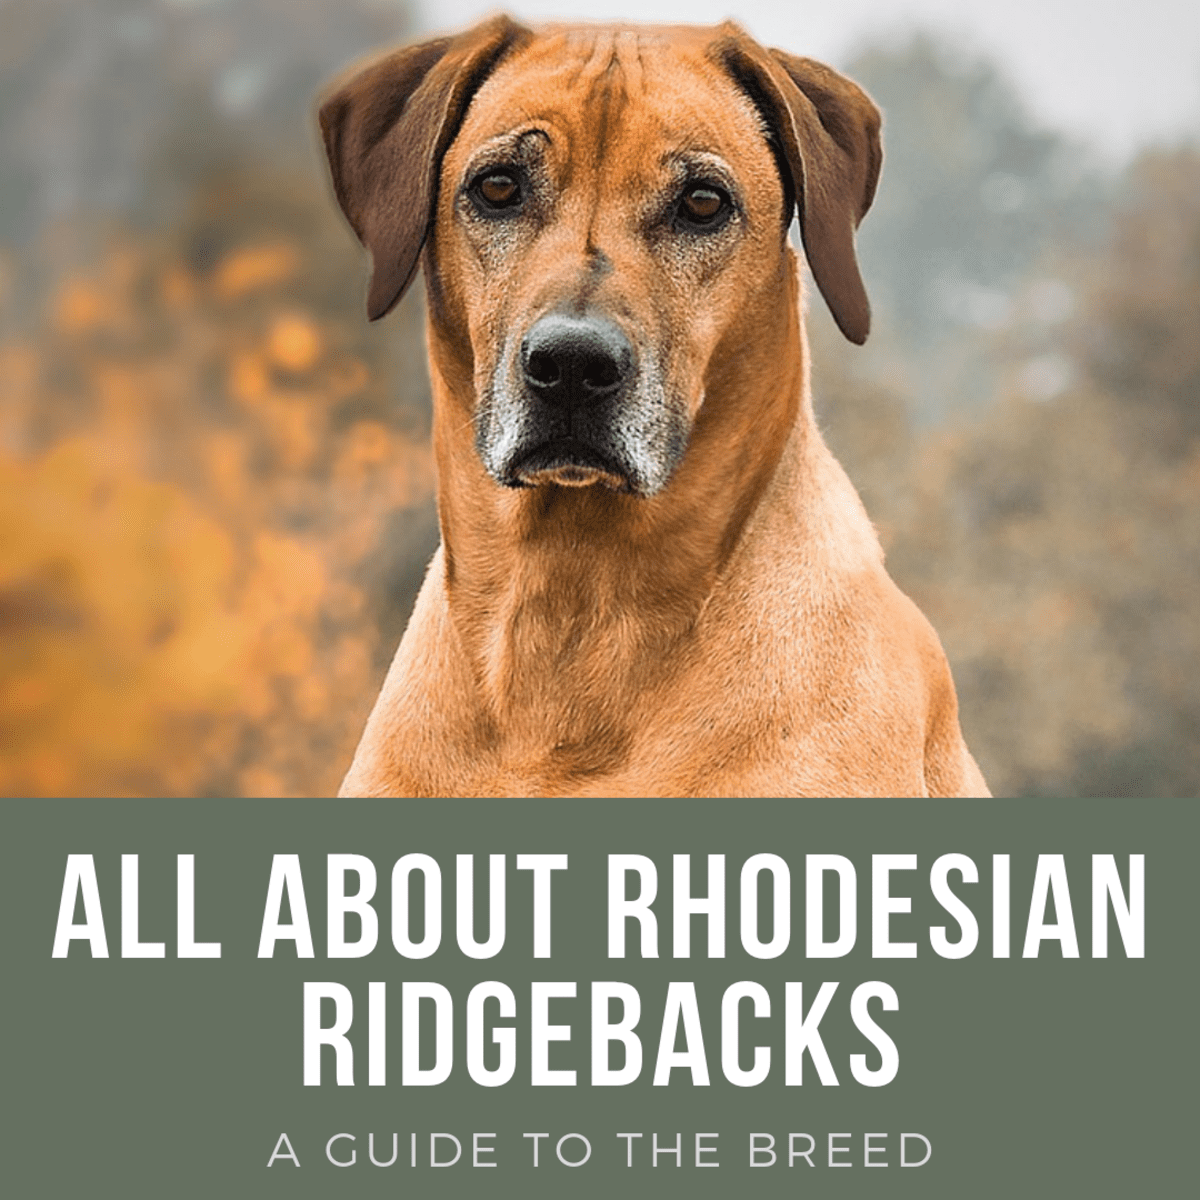 are rhodesian ridgebacks credible